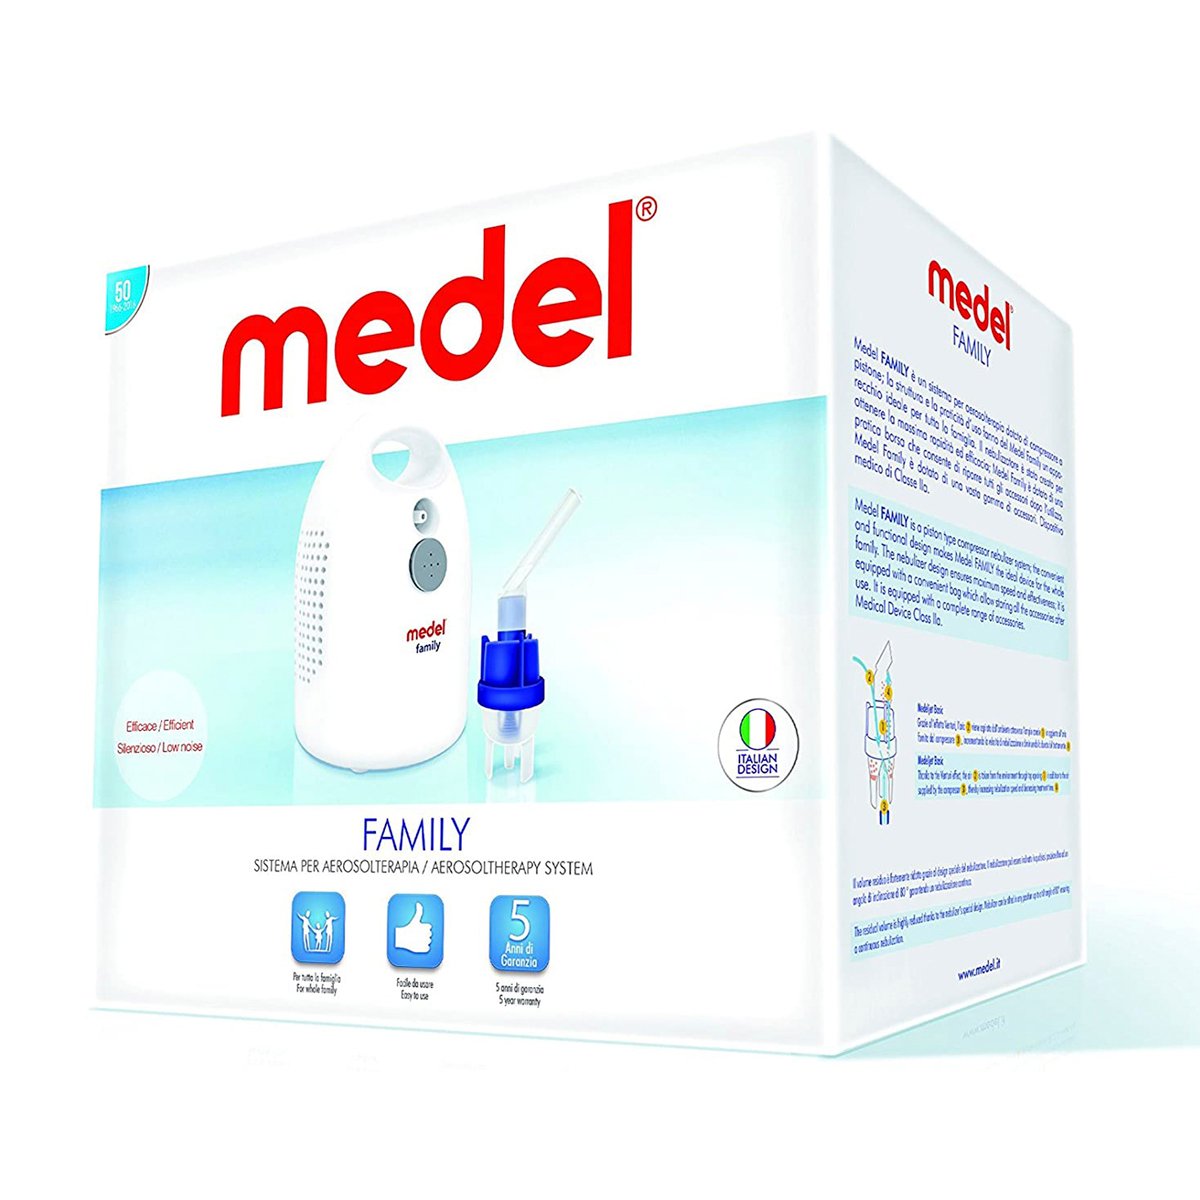 Medel Nebulizer Family REF95117